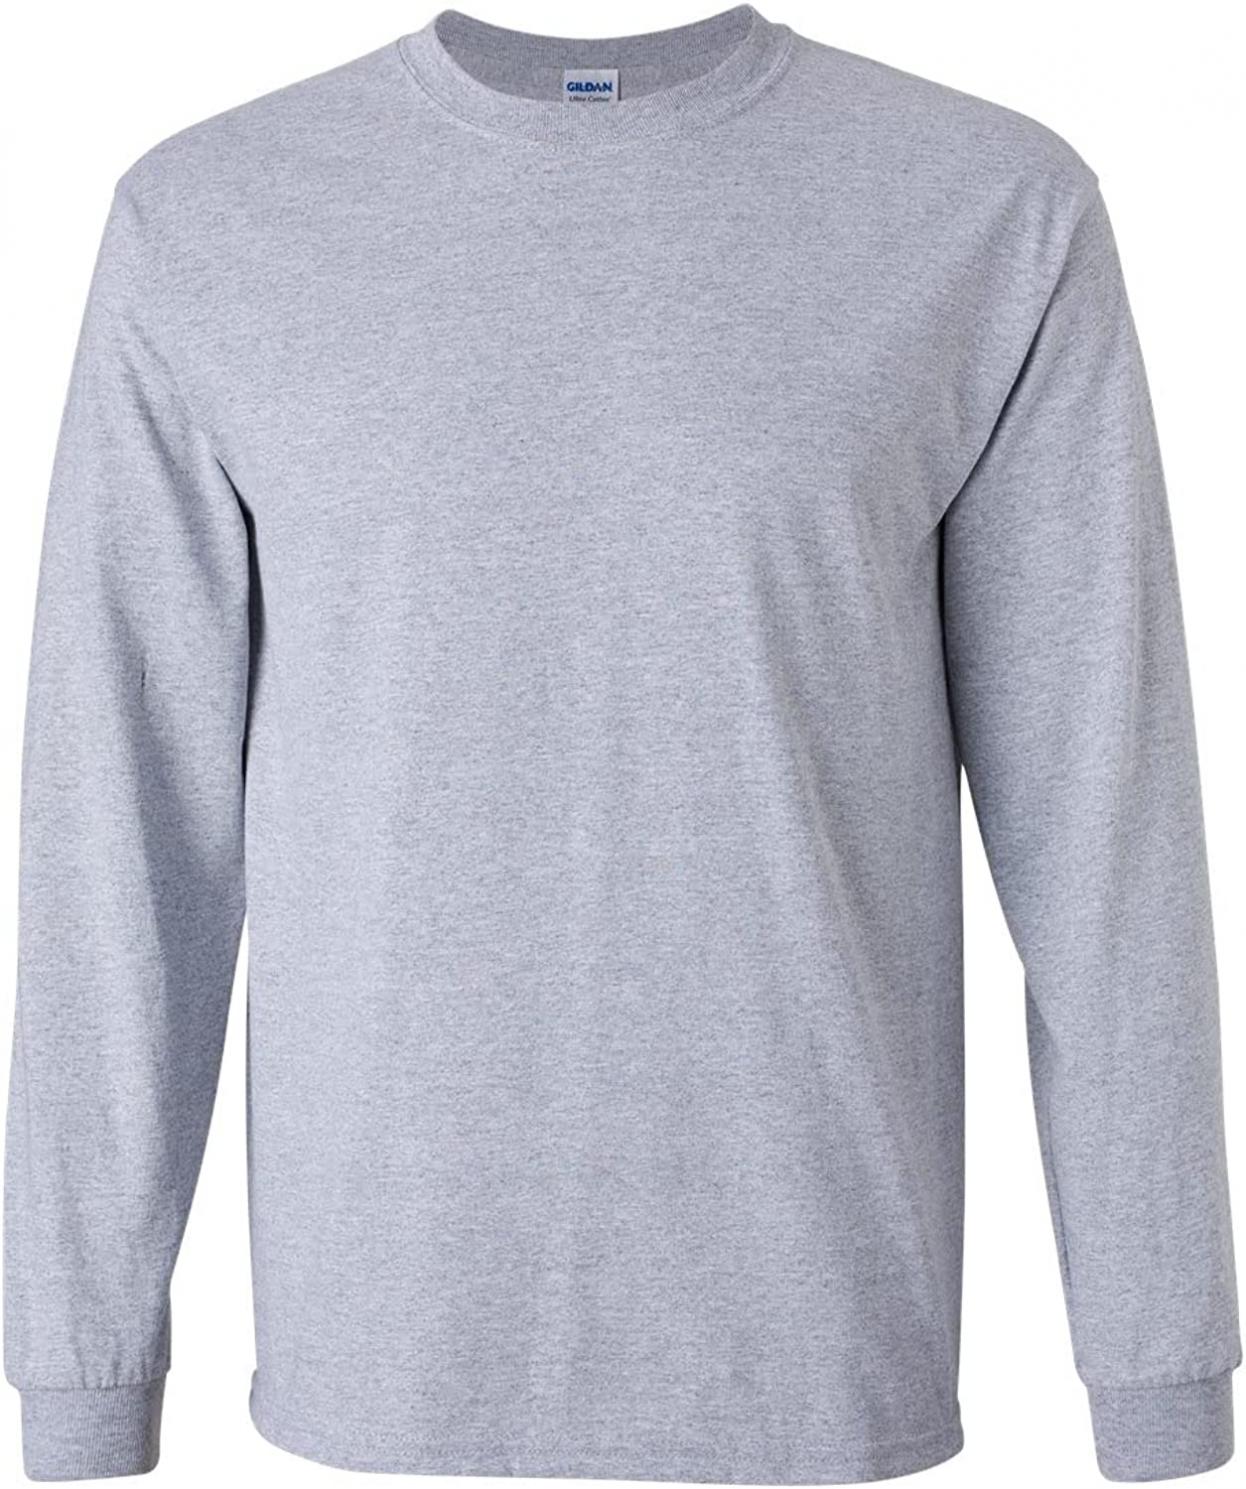 Gildan Men's Ultra Cotton Long Sleeve T-Shirt, G2400, 2-Pack